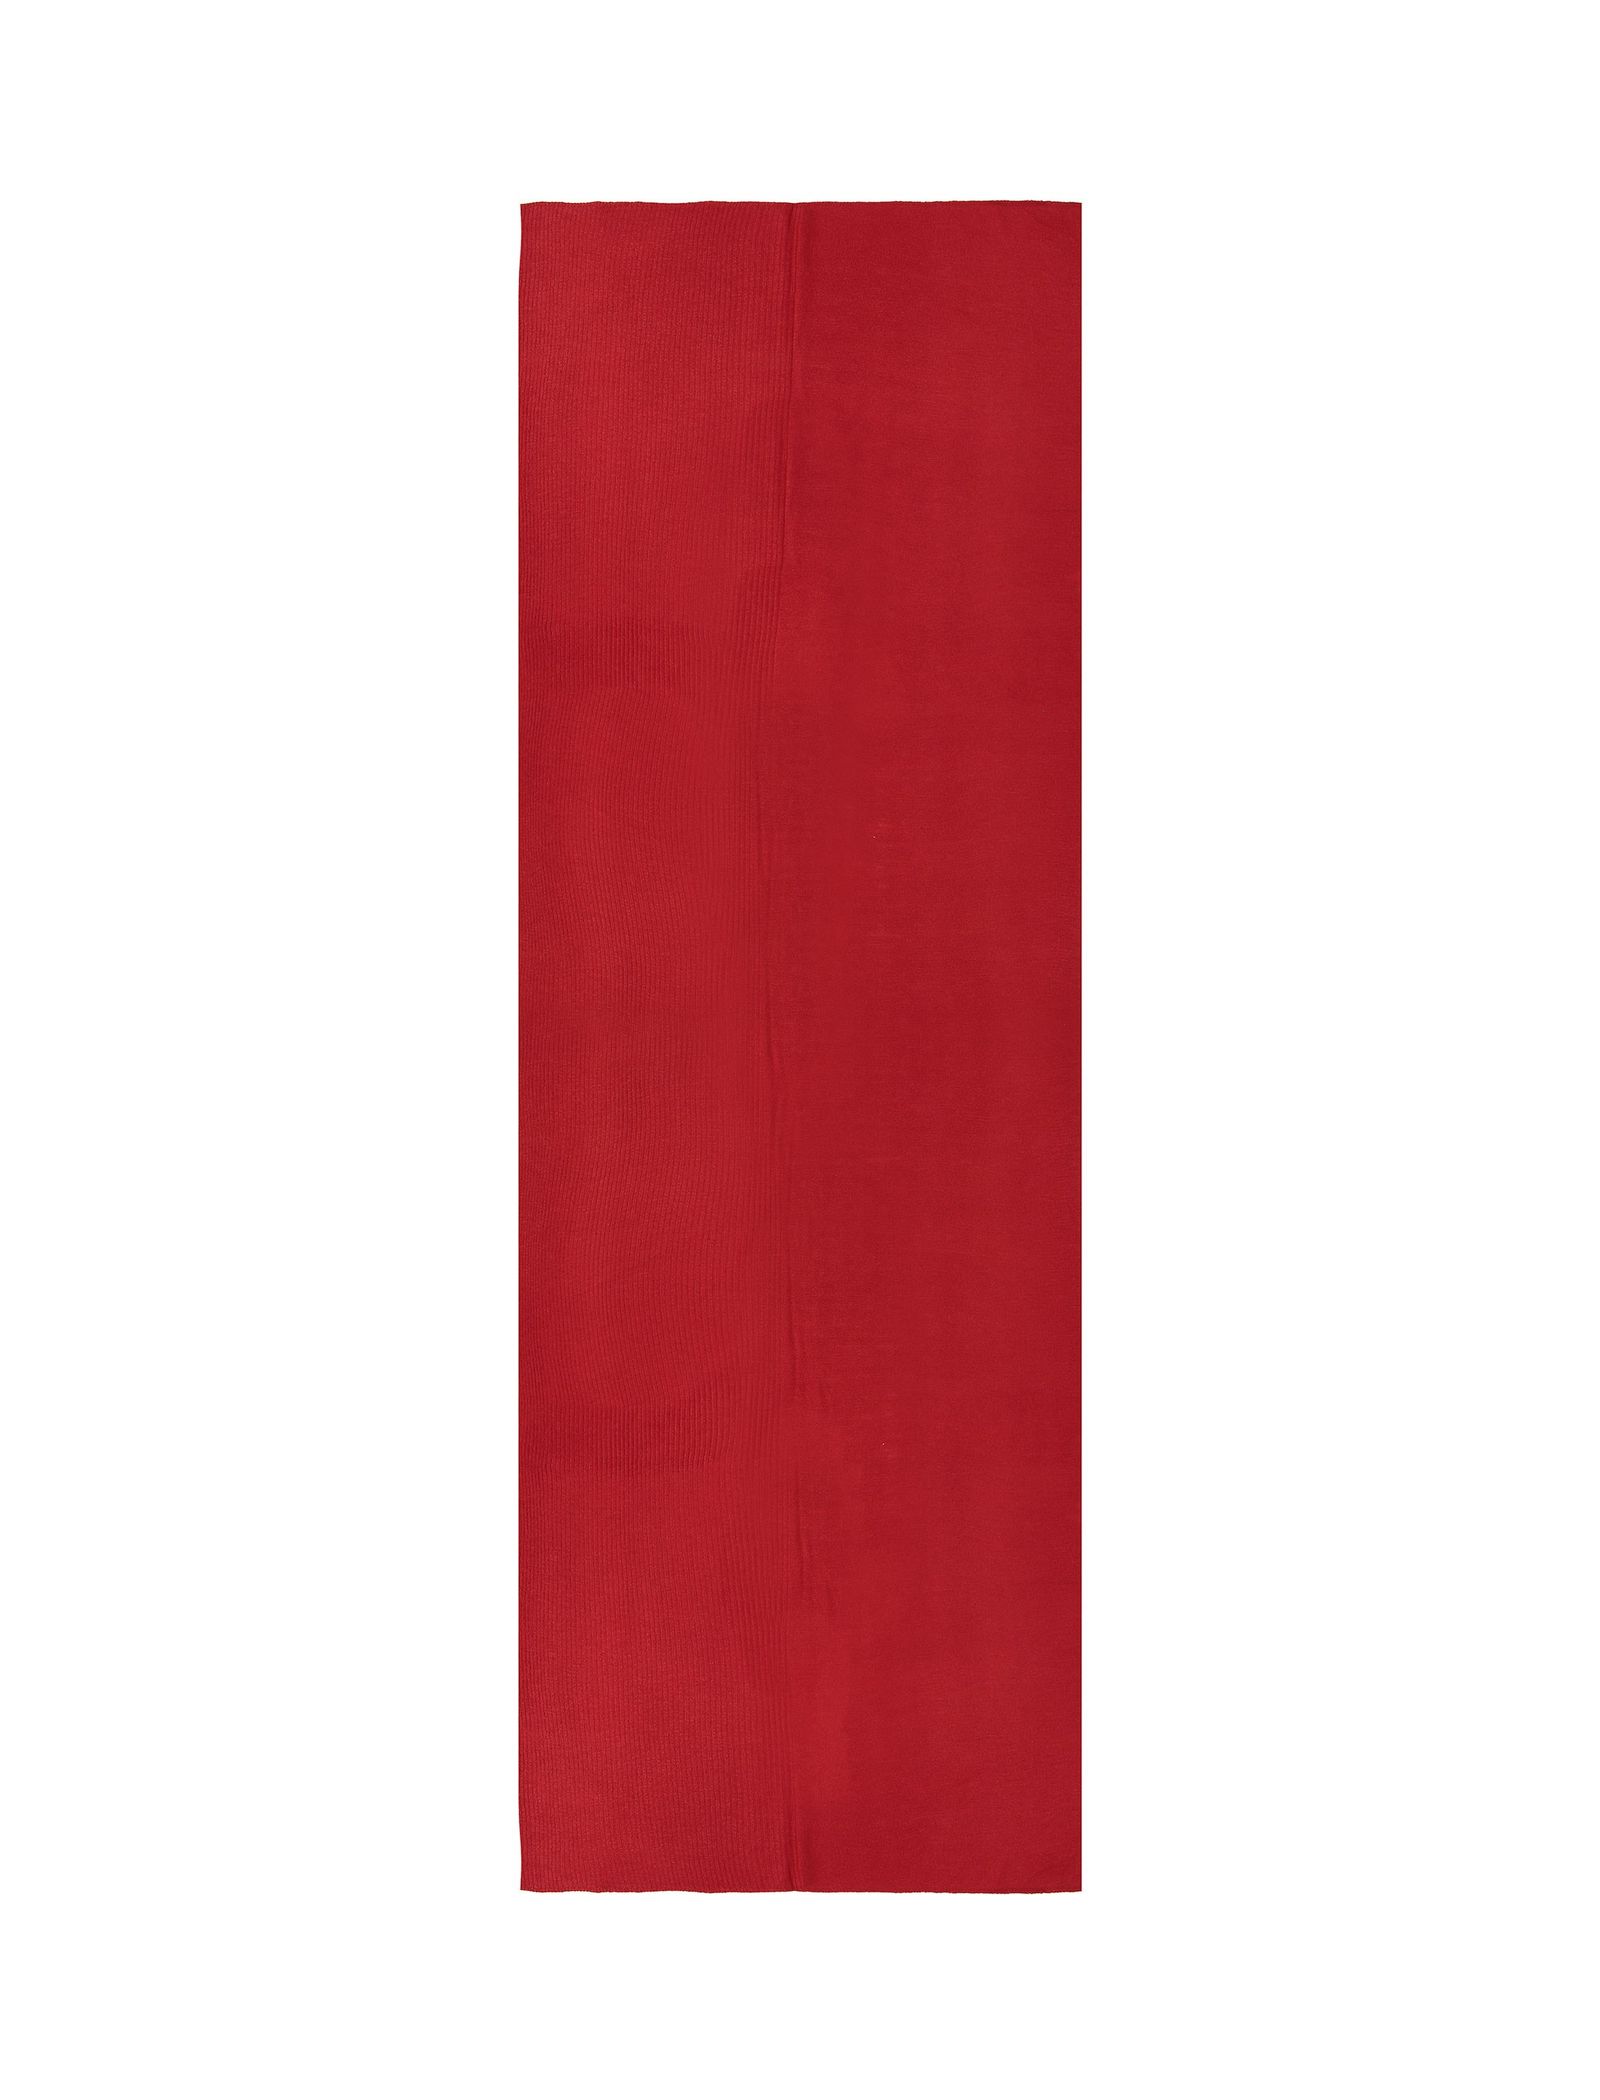 شال ساده زنانه - زیبو تک سایز - قرمز - 1